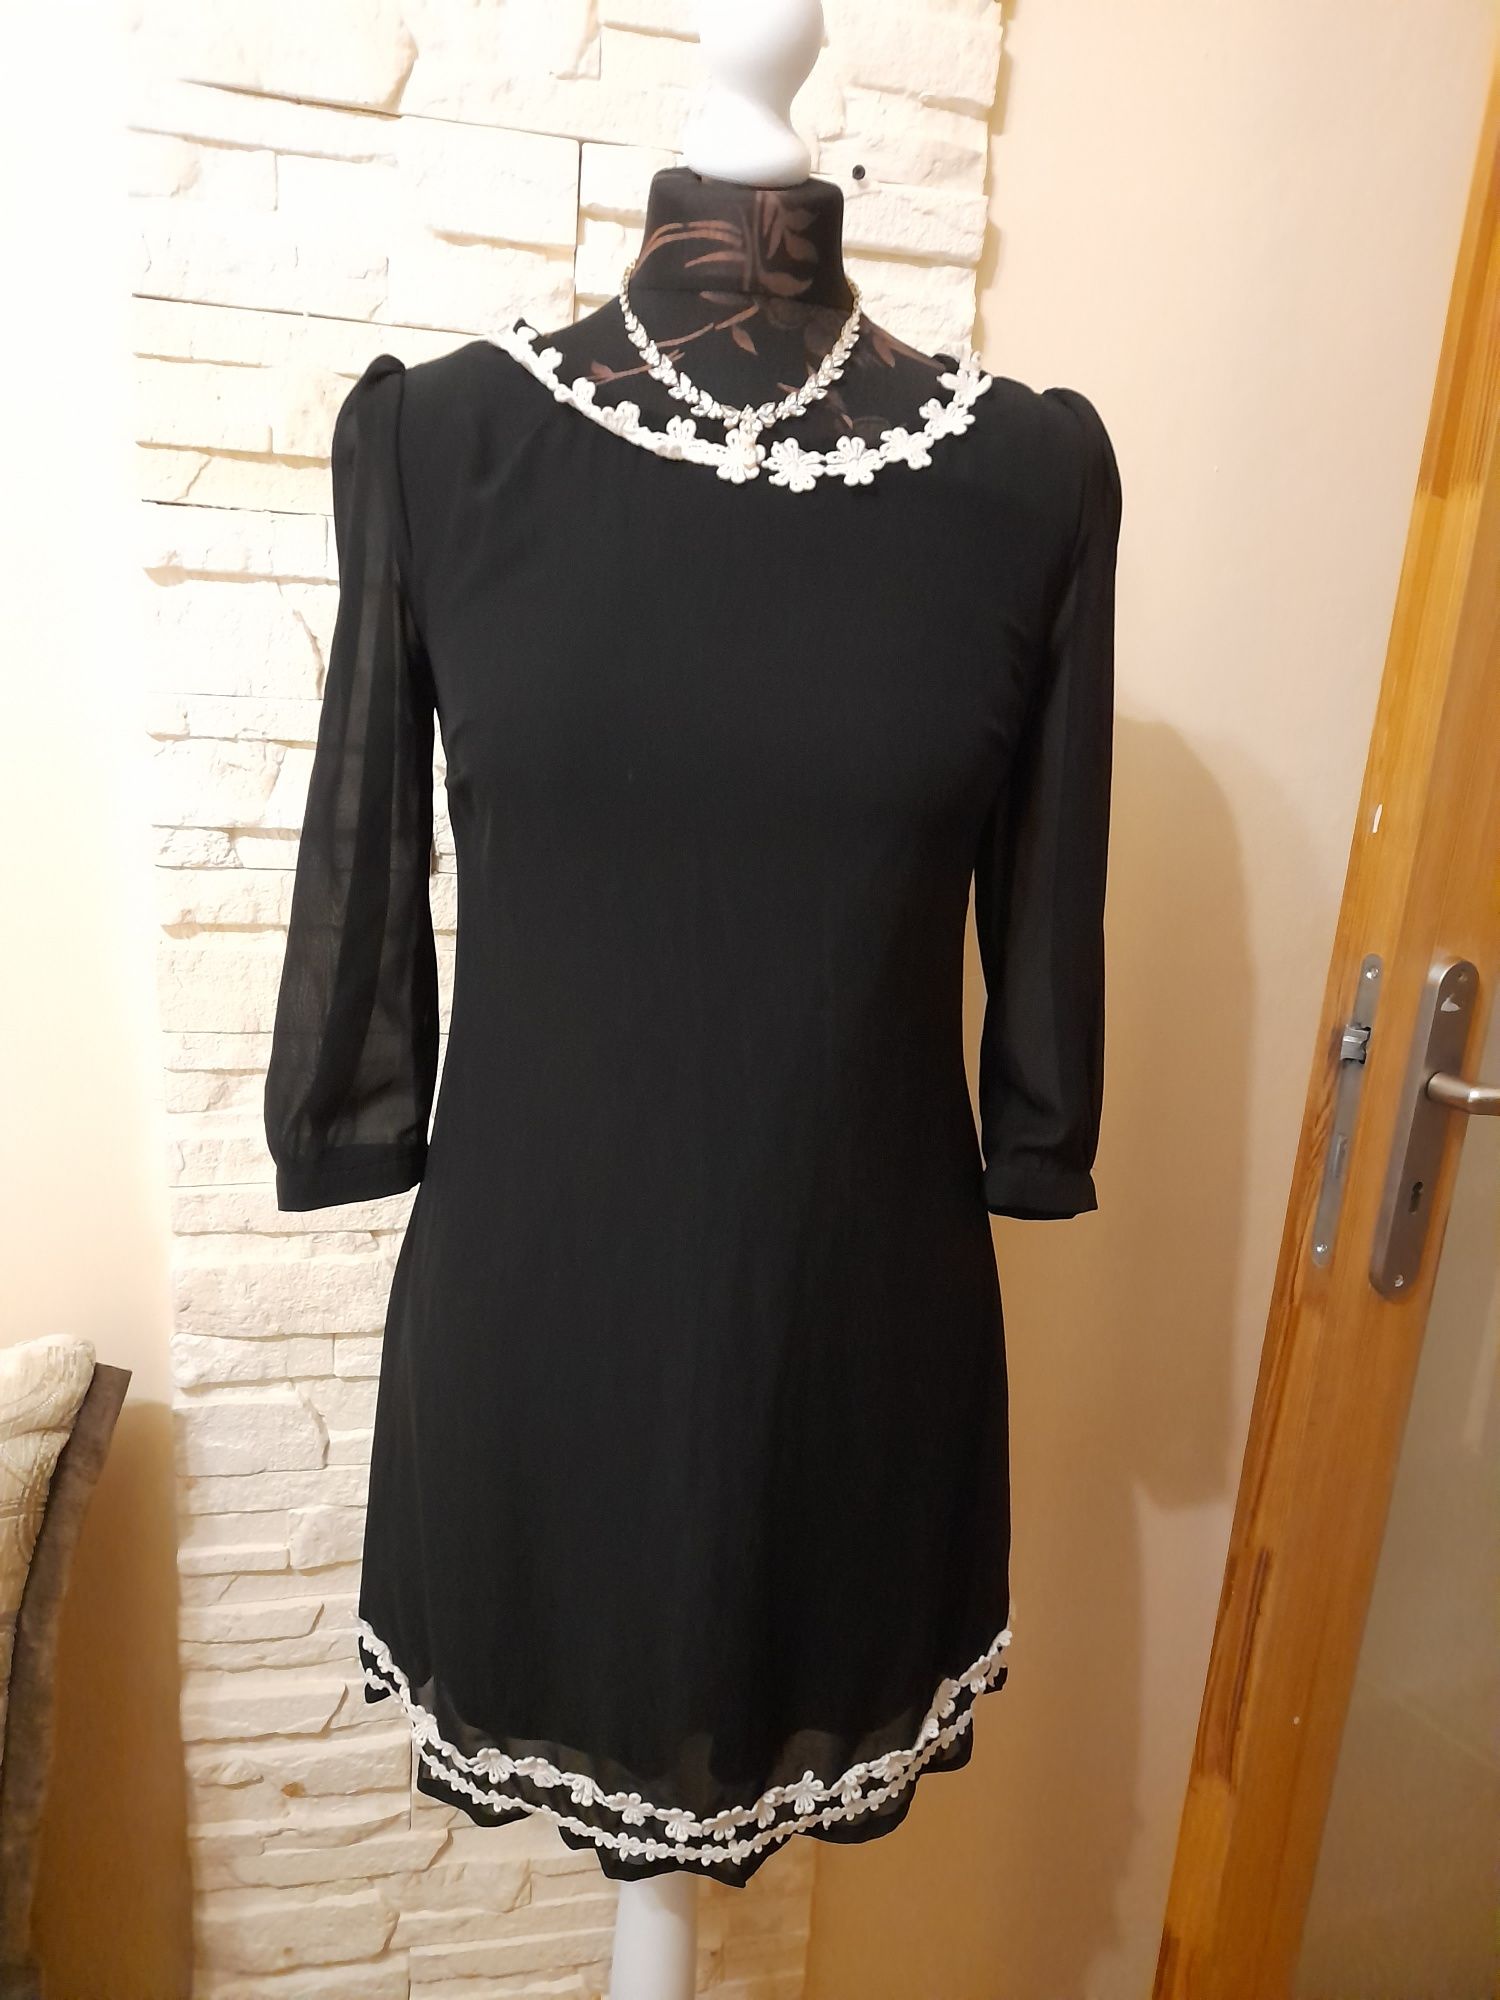 Zgrabniusia wieczorowa czarna sukienka koktajlowa święta  38